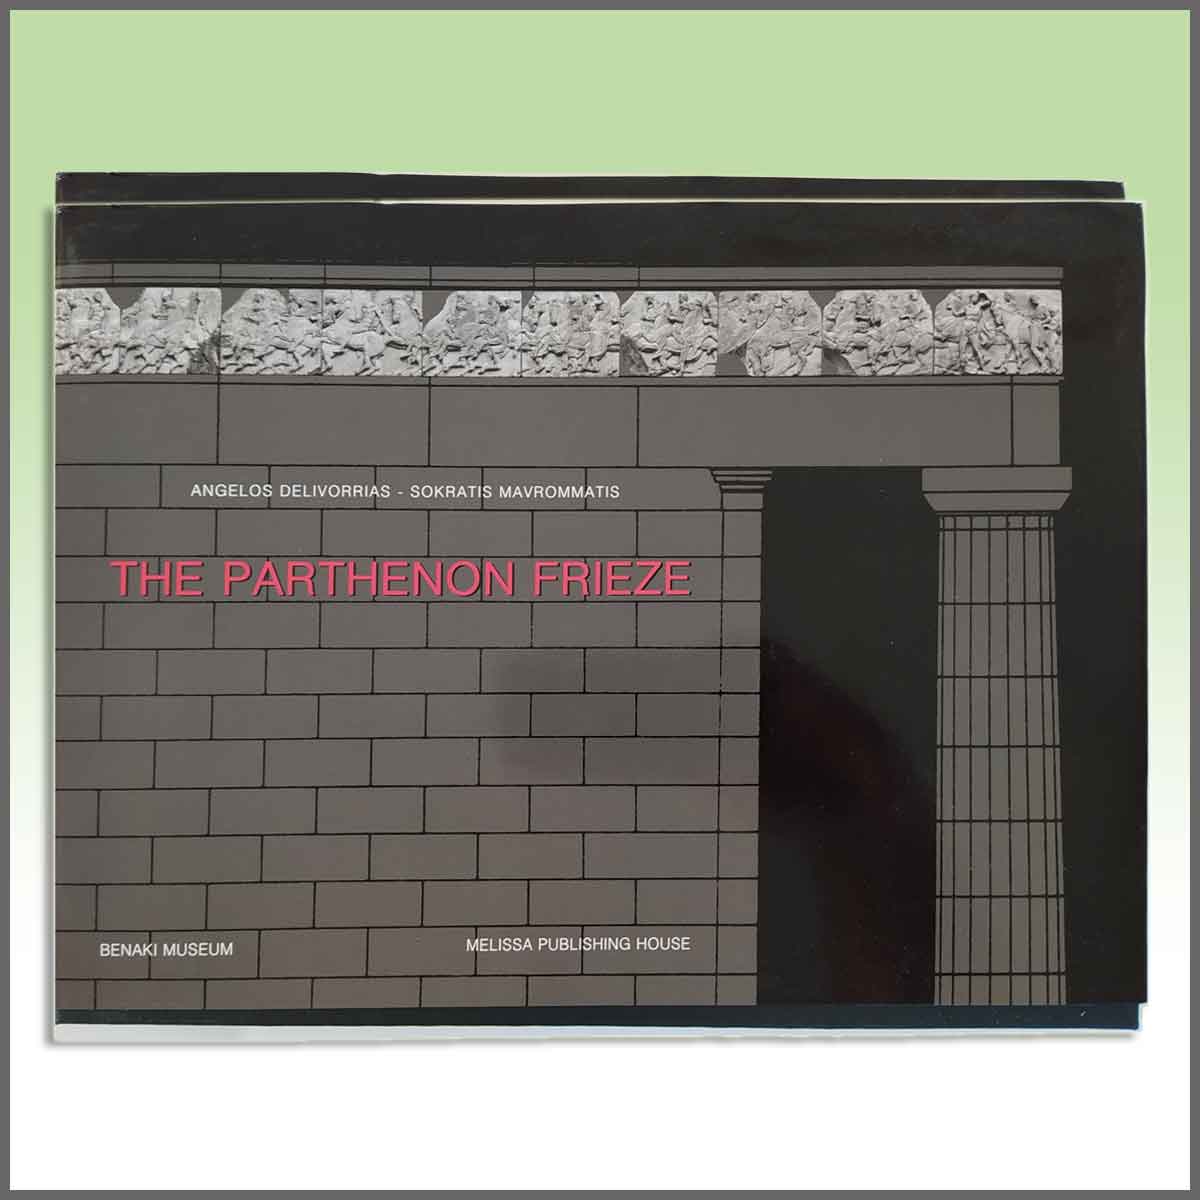 The Parthenon Frieze (problems, challenges, interpretations)